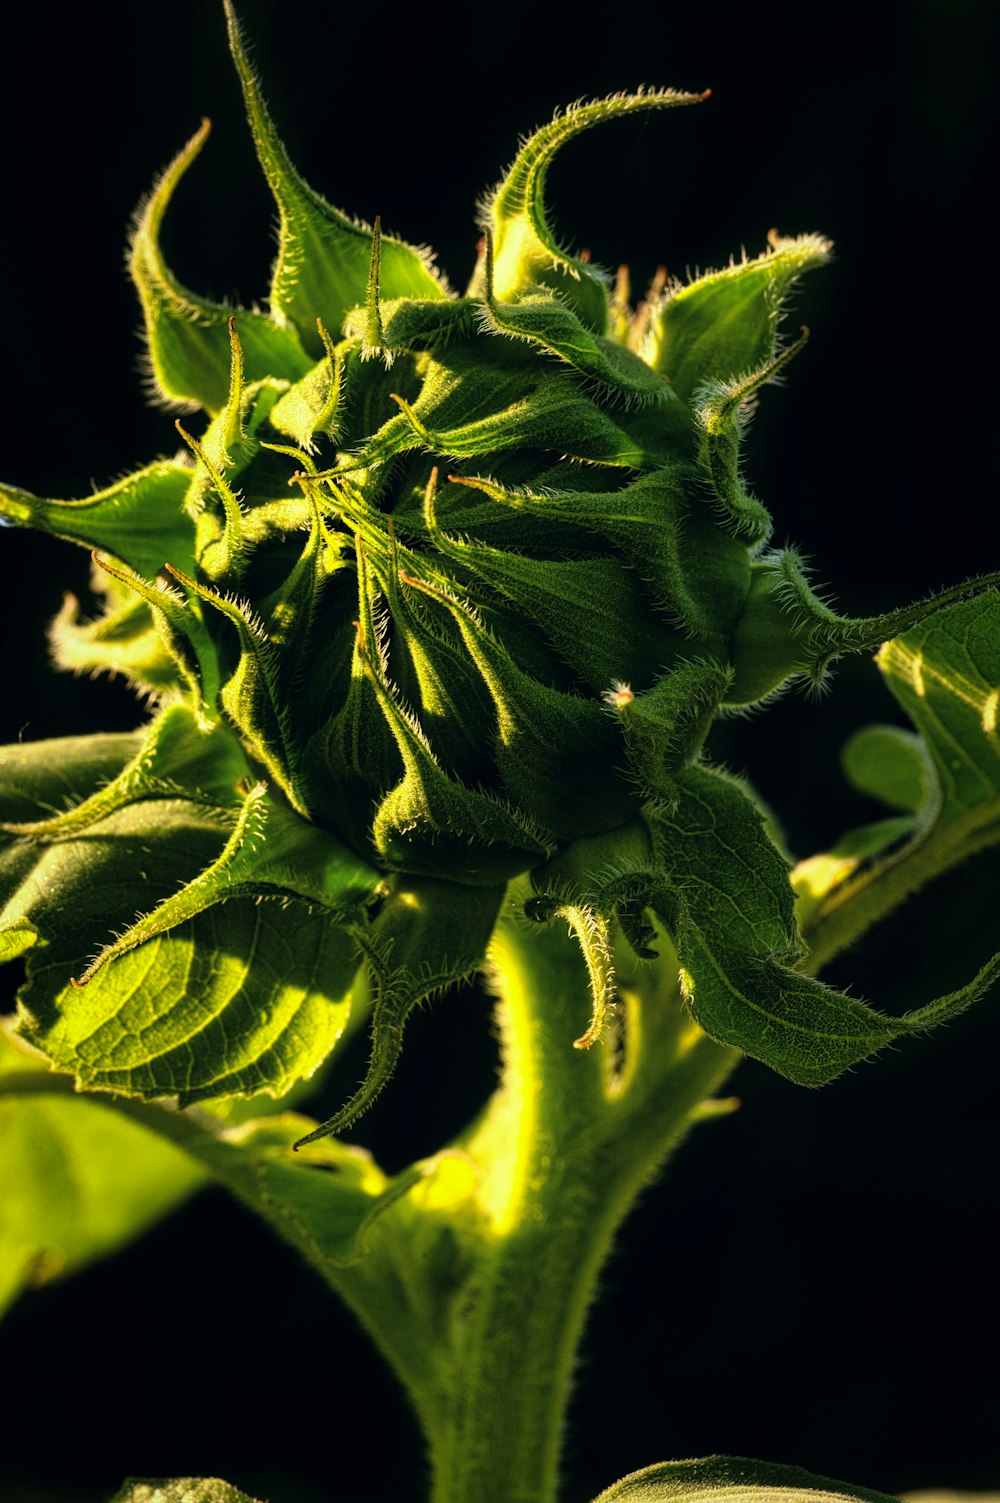 bocciolo di fiore verde in fotografia ravvicinata